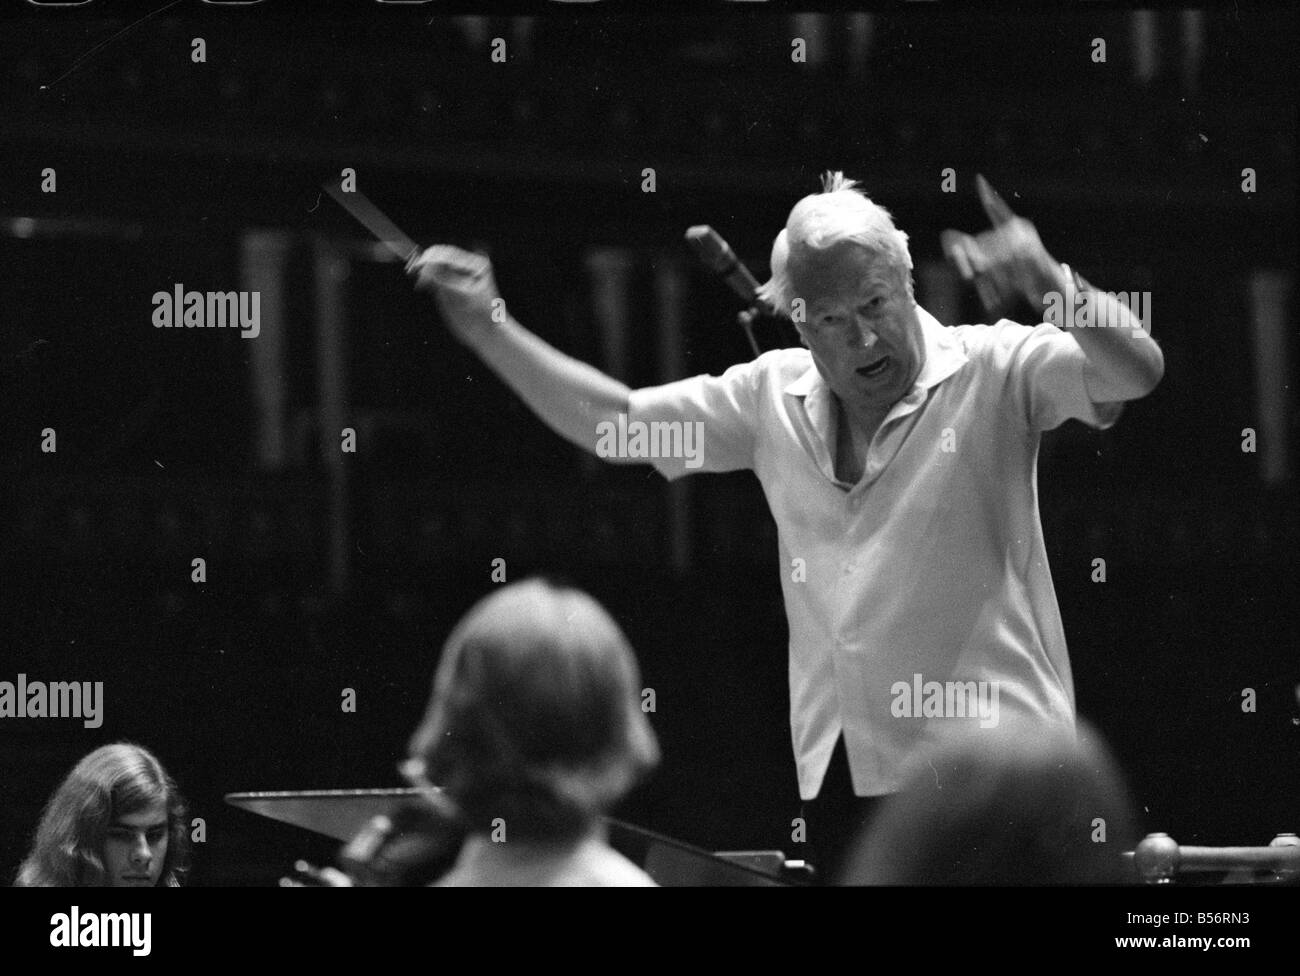 107 Edward Heath à répéter avec l'Orchestre des jeunes de la Communauté européenne forte au Royal Albert Hall. M. Heath est président de l'orchestre.;Août 1978;78-3974-006 Banque D'Images